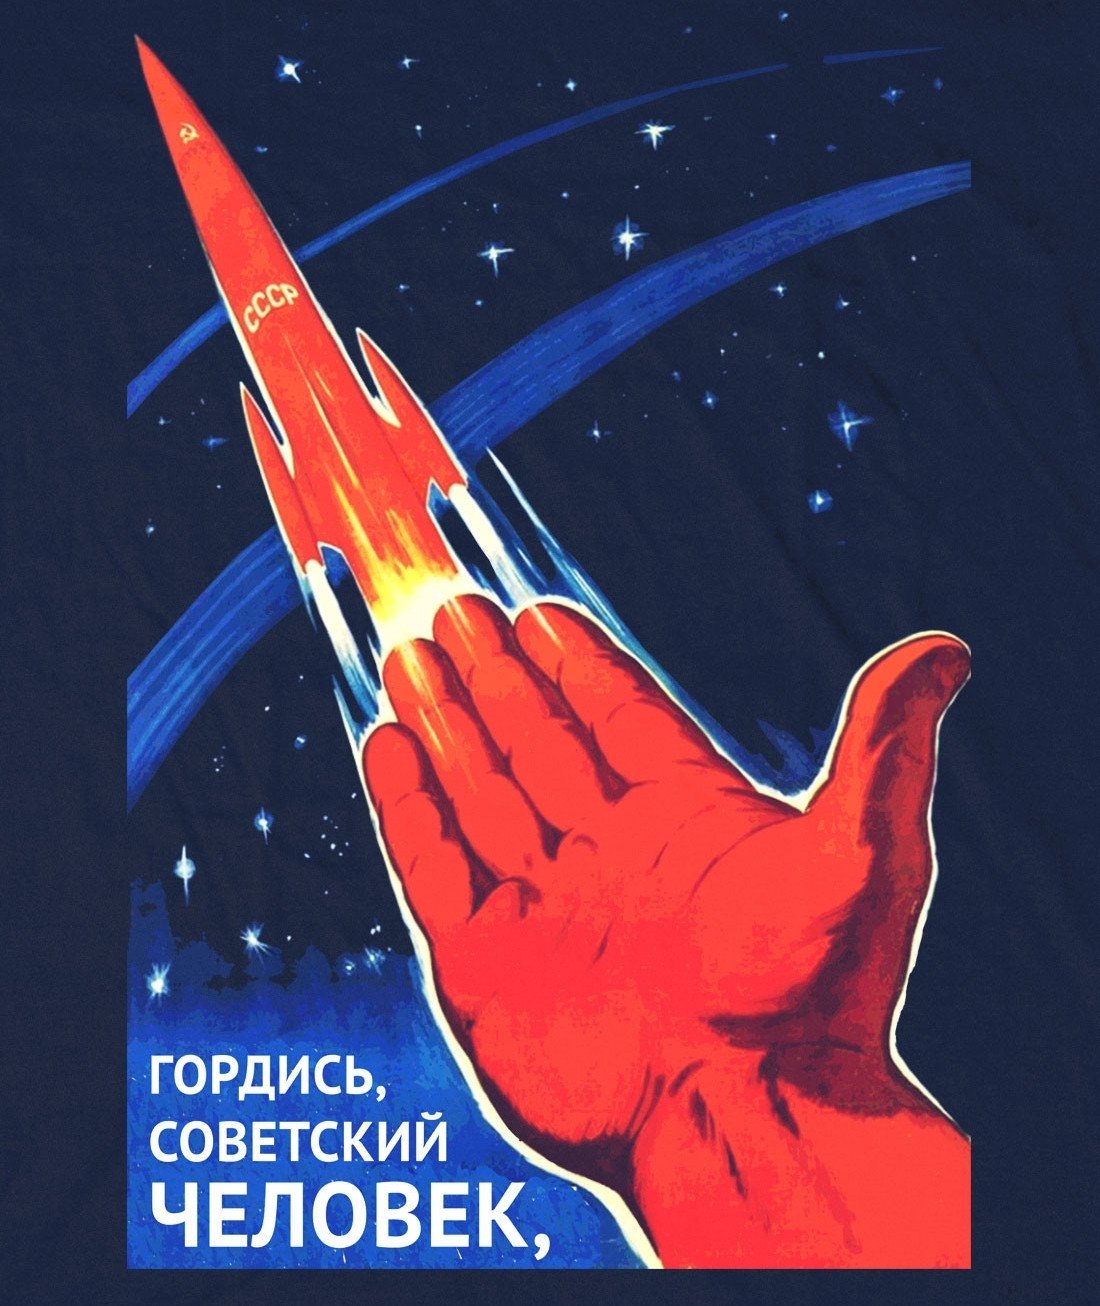 Советский человек плакат. Гордись Советский человек. Плакат гордись Советский человек. Плакат. Космос. Космический плакат.